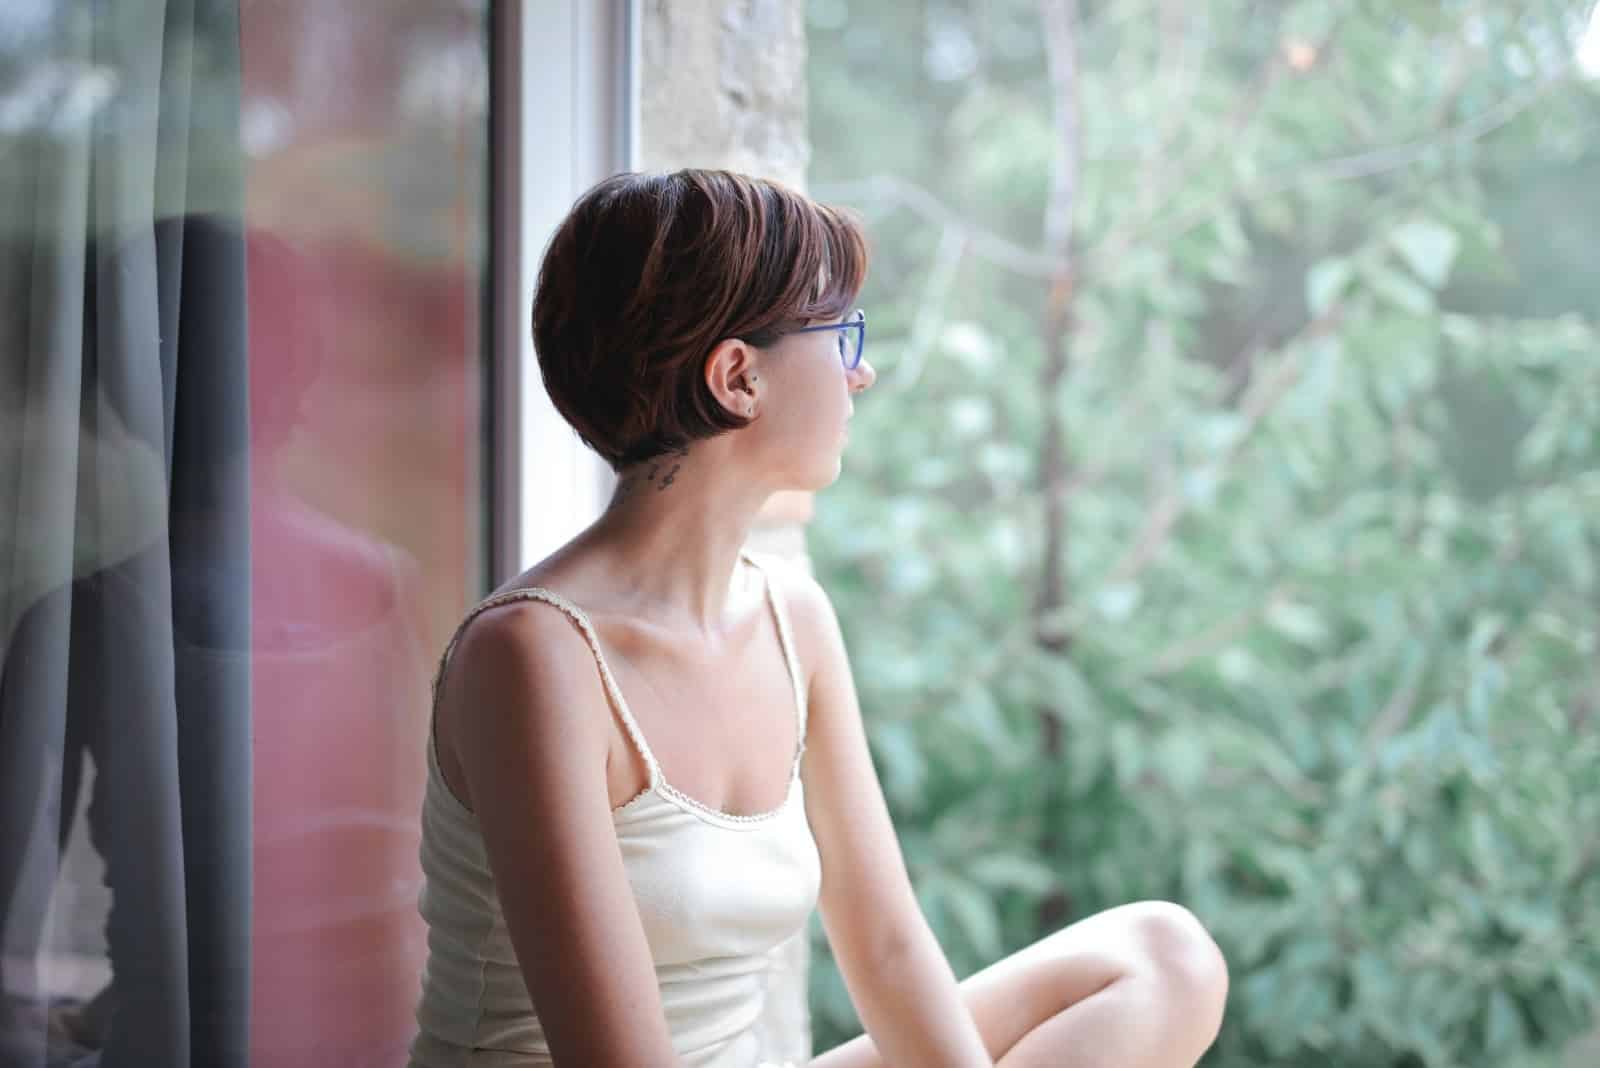 mujer sentada en el cristal de la ventana mirando por la ventana